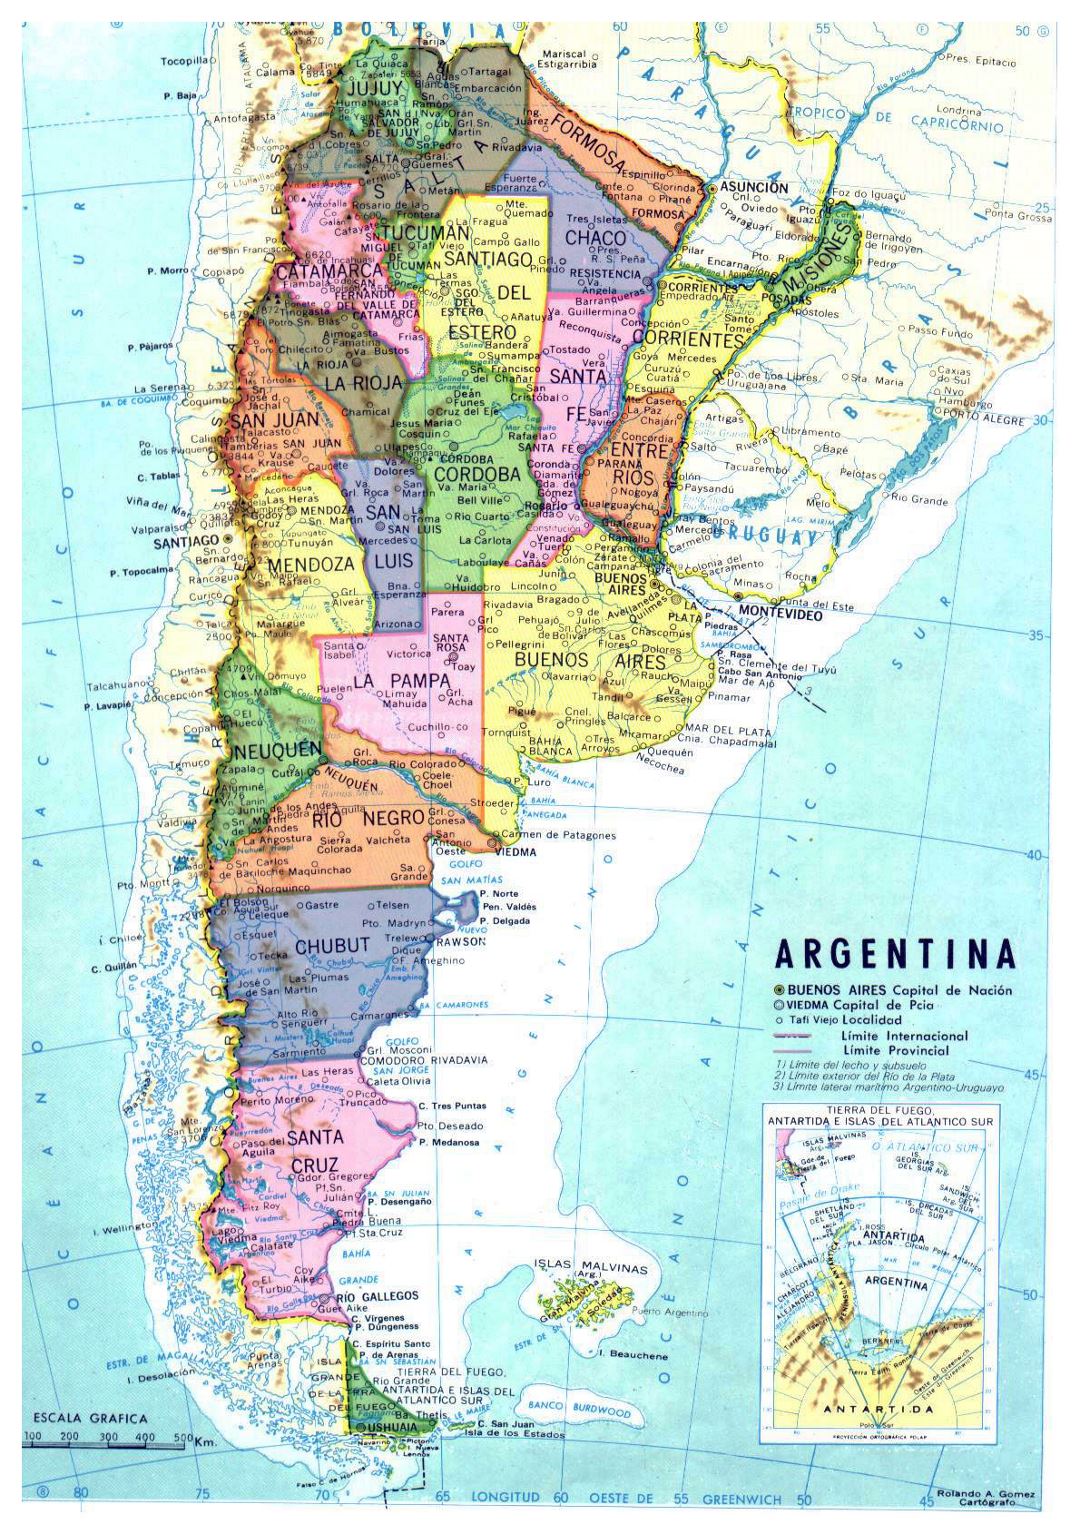 Detallado mapa político y administrativo de Argentina